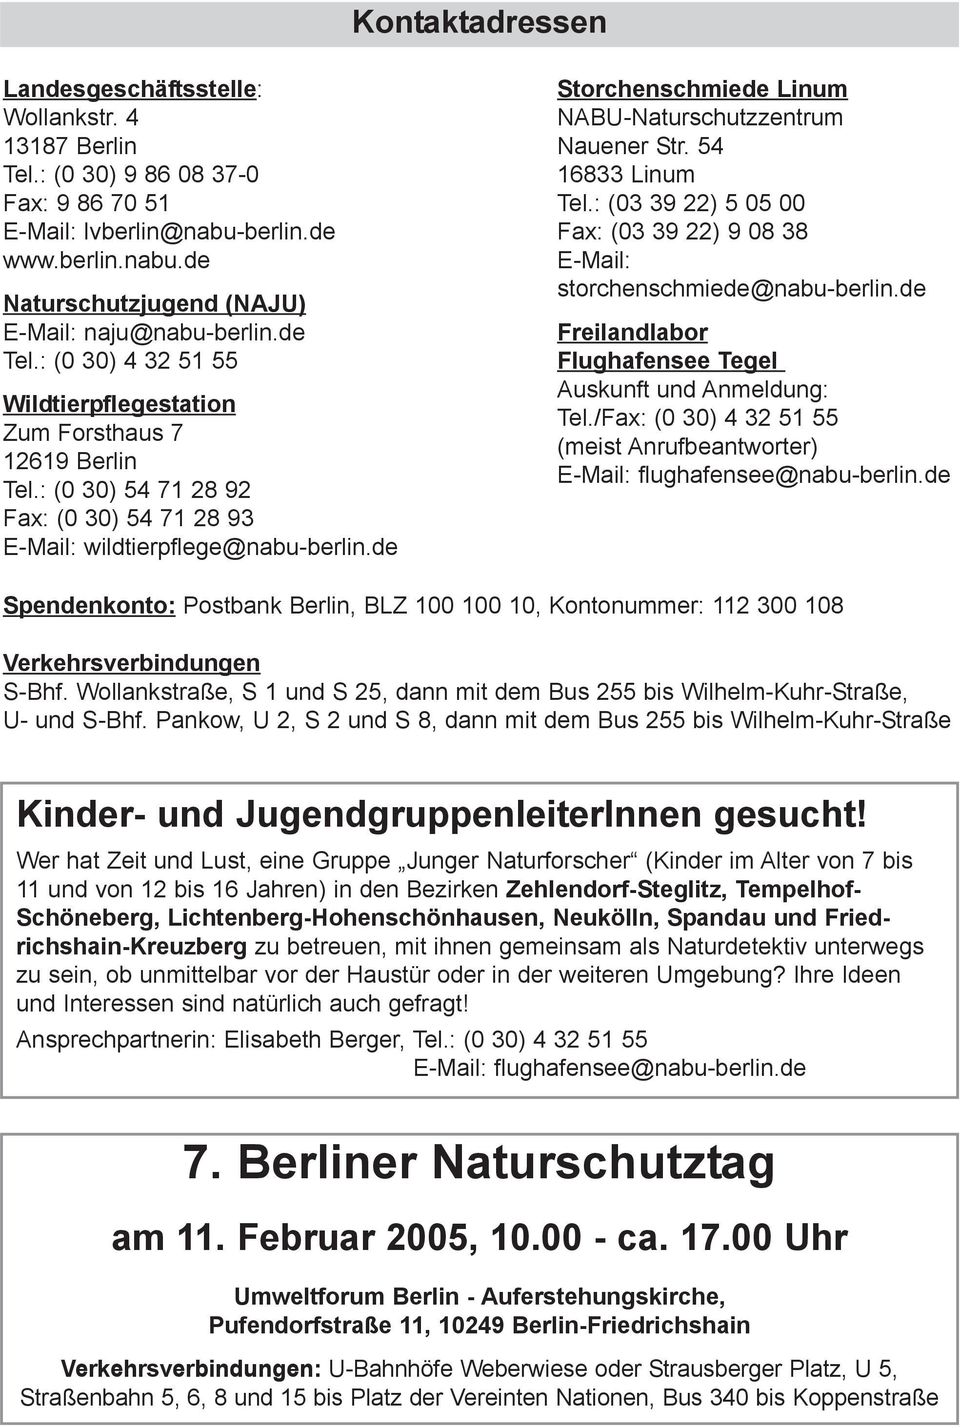 de Storchenschmiede Linum NABU-Naturschutzzentrum Nauener Str. 54 16833 Linum Tel.: (03 39 22) 5 05 00 Fax: (03 39 22) 9 08 38 E-Mail: storchenschmiede@nabu-berlin.